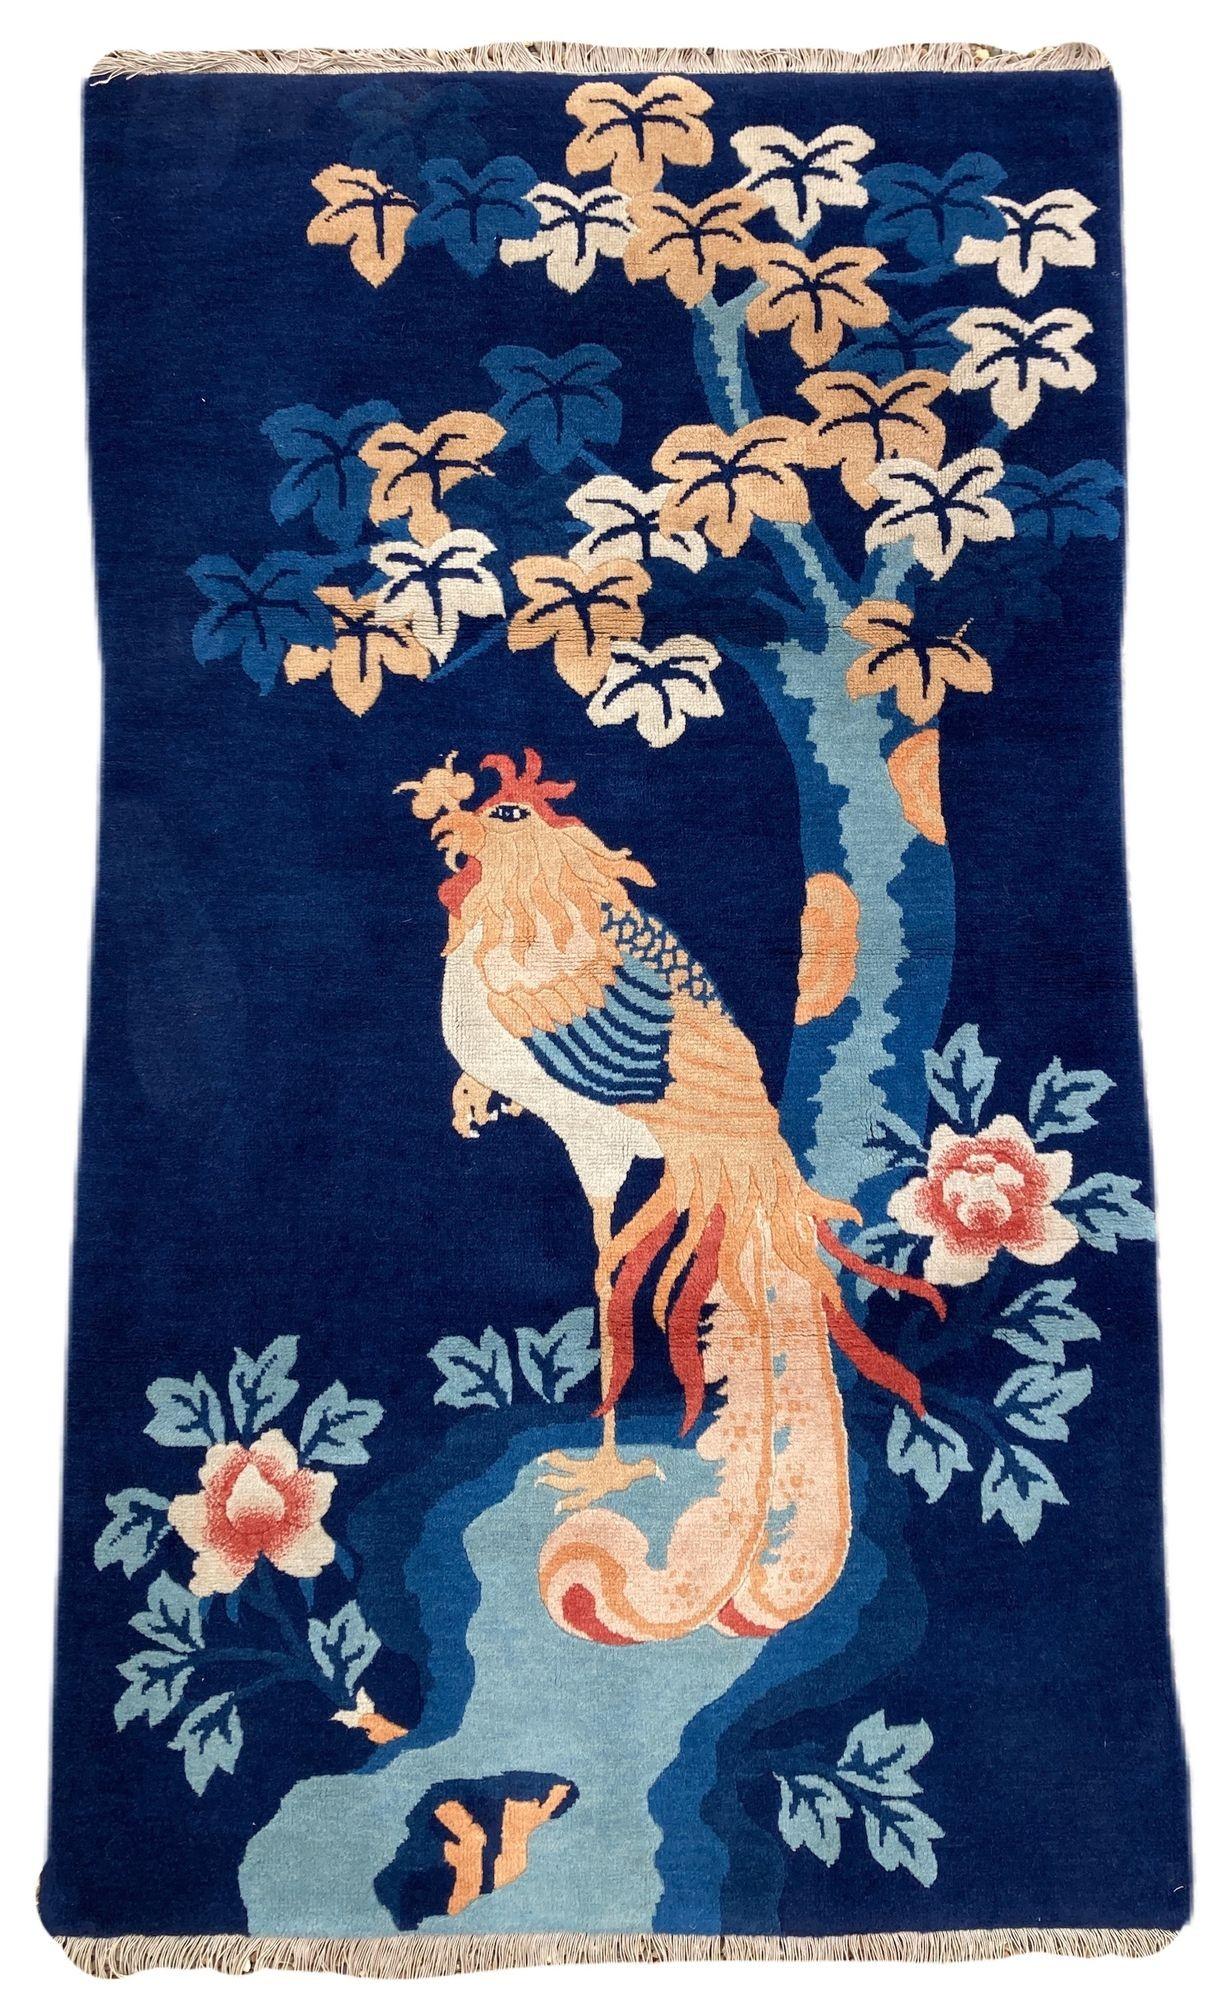 Un joli tapis Pao-Tao vintage, tissé à la main en Chine vers 1940. Le motif représente un seul oiseau Fenghuang devant un arbre en fleurs sur un champ indigo profond. Cet oiseau mythique est un symbole de bon augure représentant la haute vertu et la